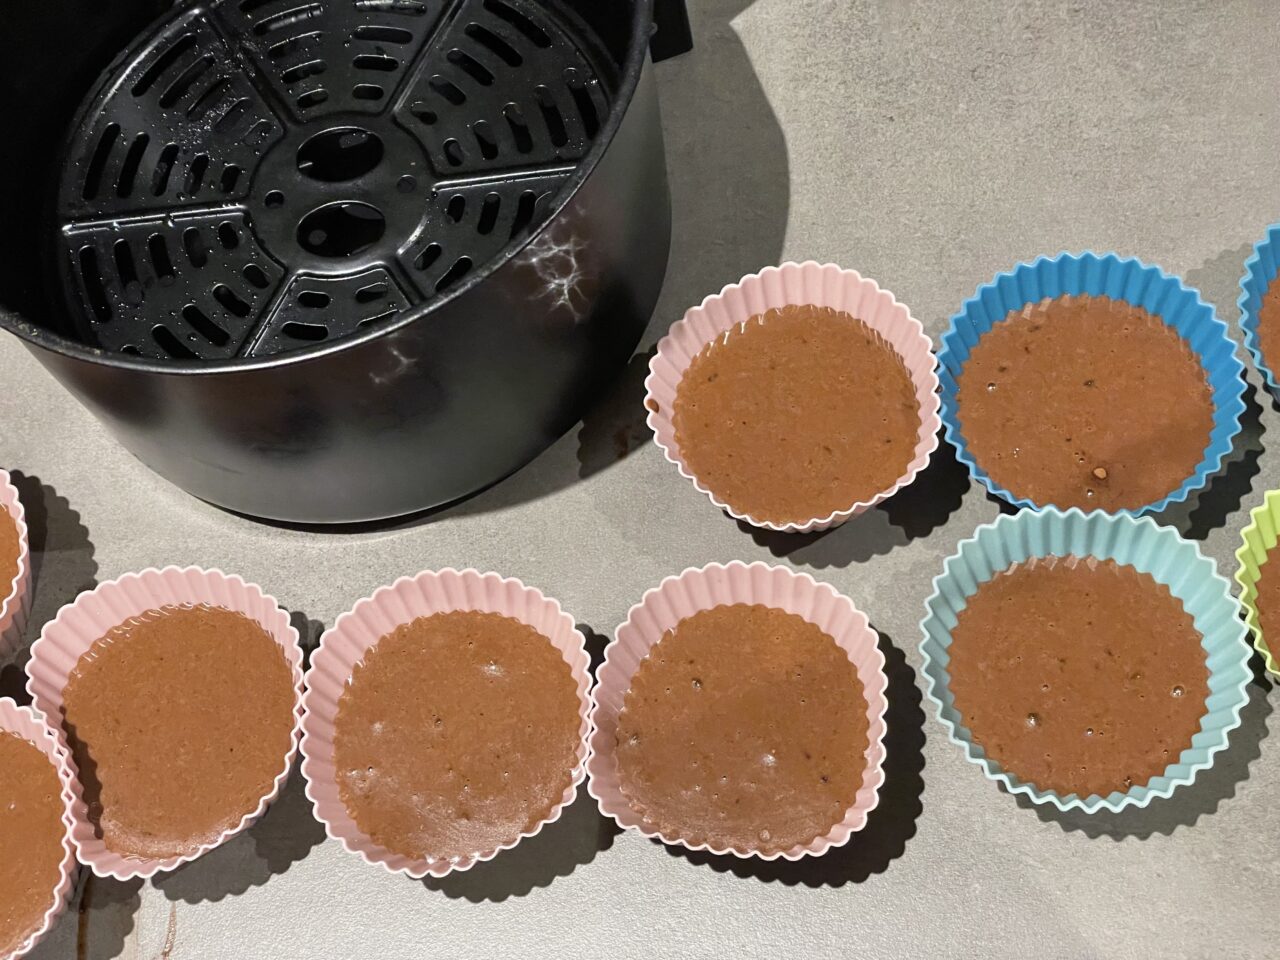 Formy do pieczenia muffinek napełnione ciastem czekoladowym ułożone obok kosza do frytkownicy na blacie kuchennym.